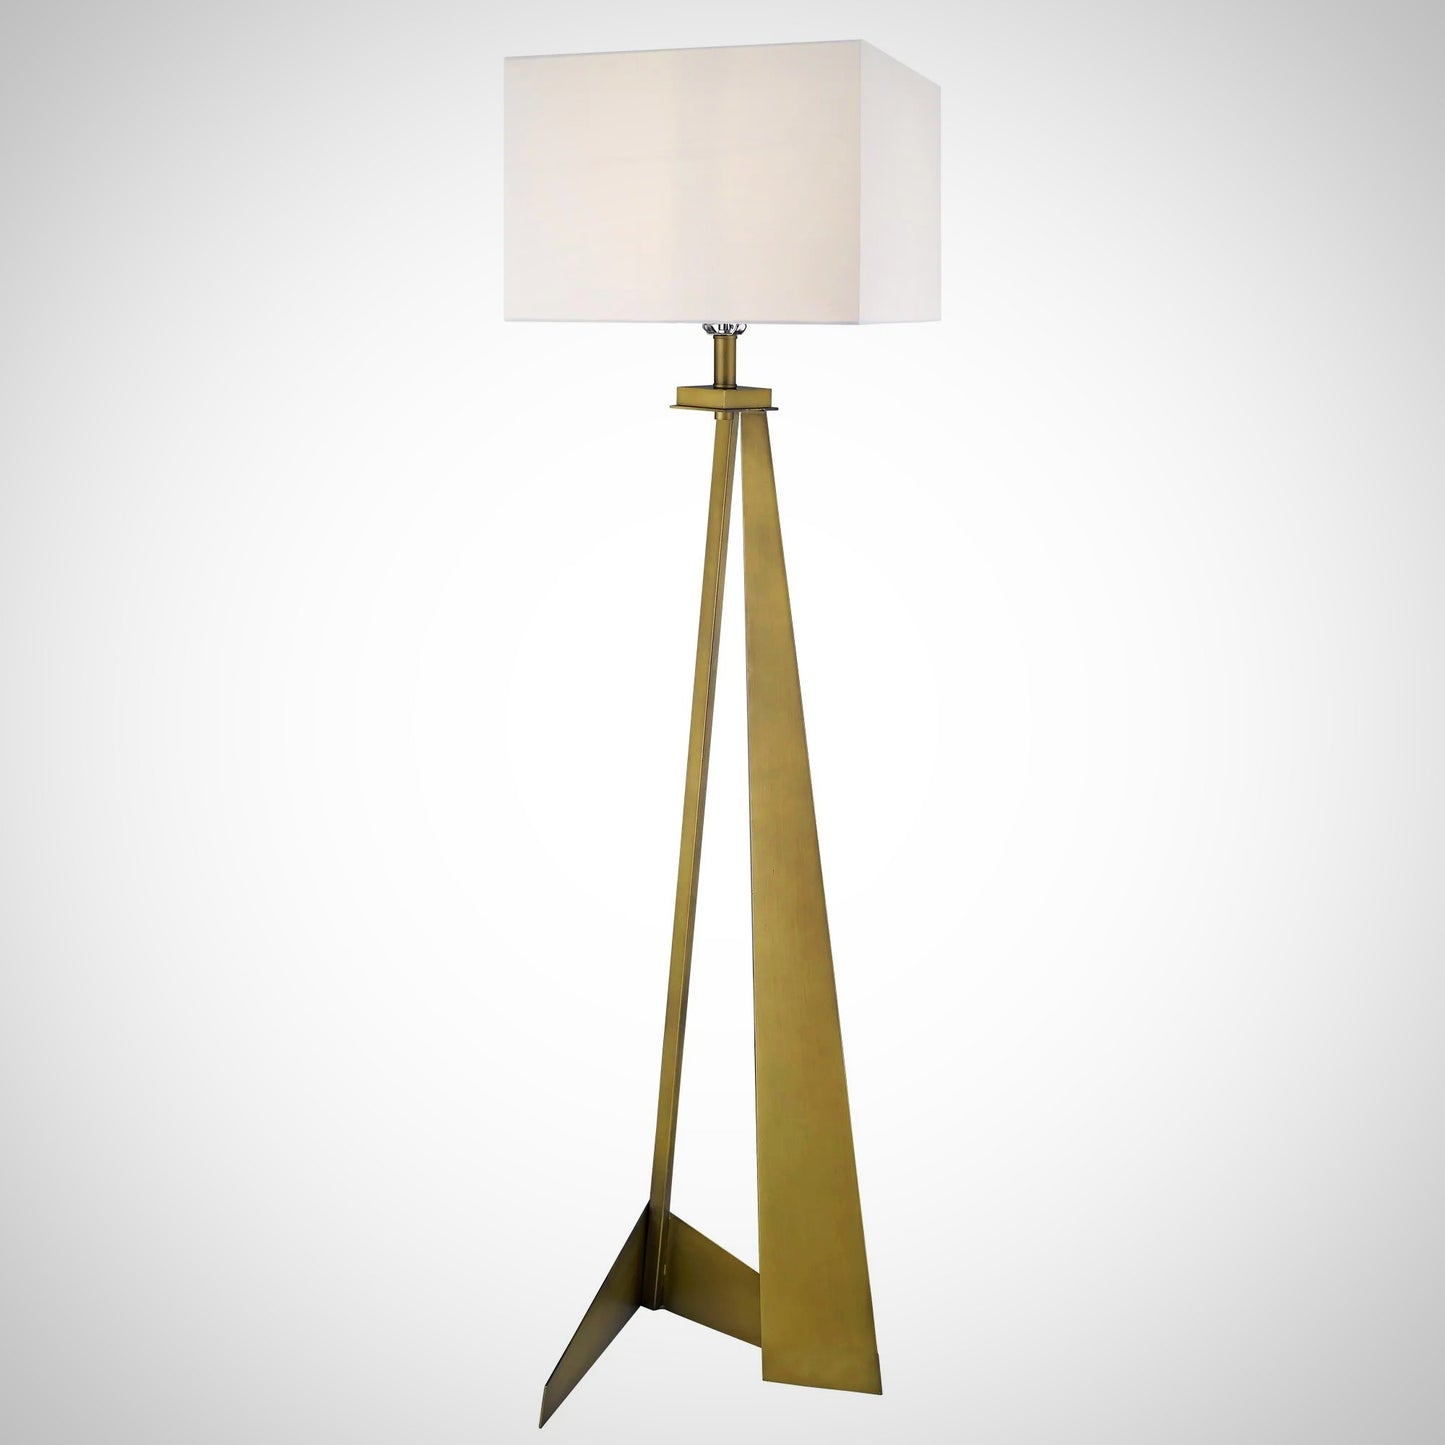 Novony Floor Lamp